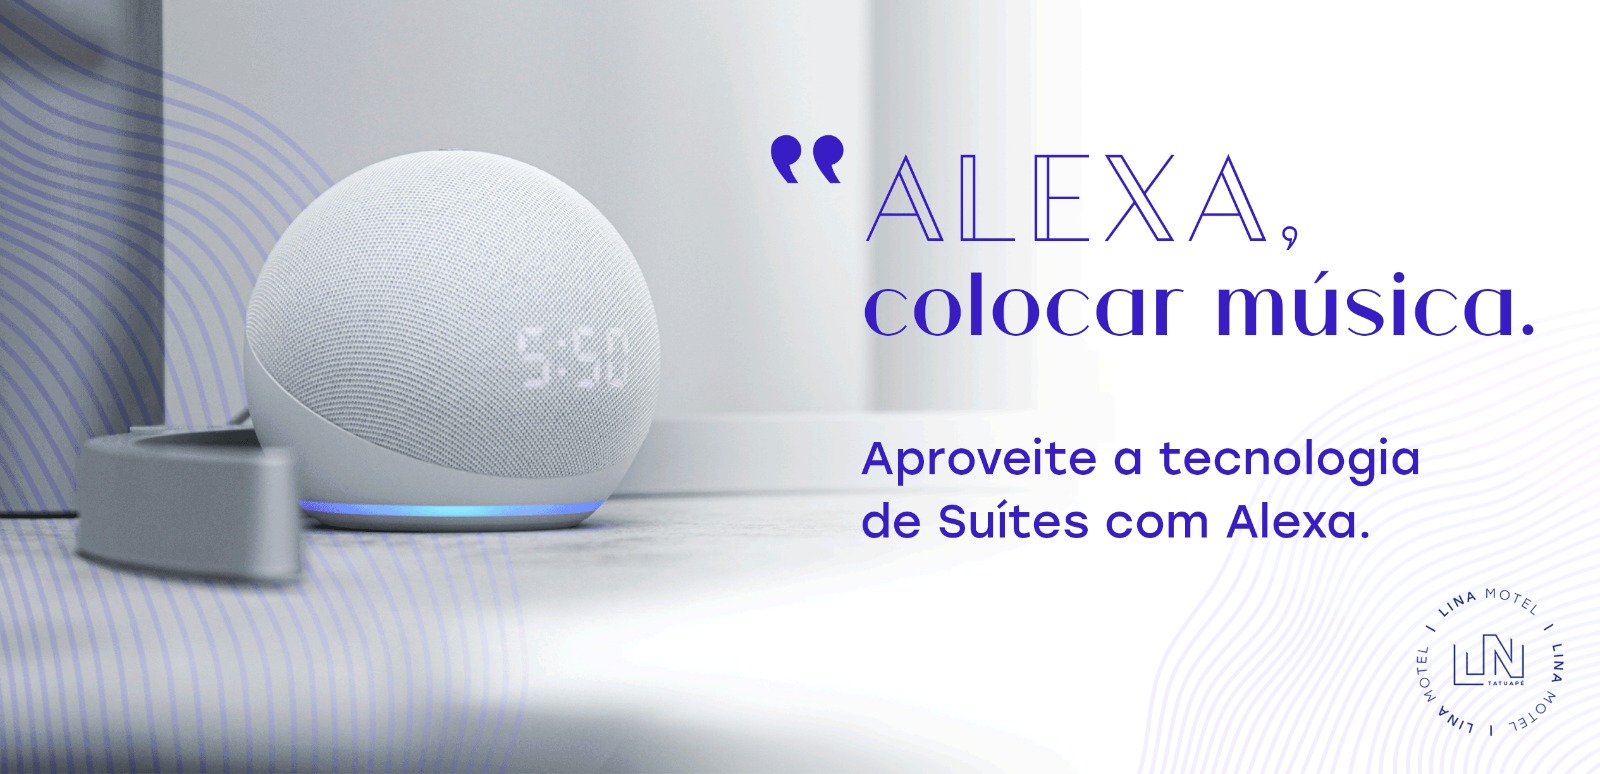 Alexa, colocar música. Aproveite a tecnologia de suítes com a Alexa.